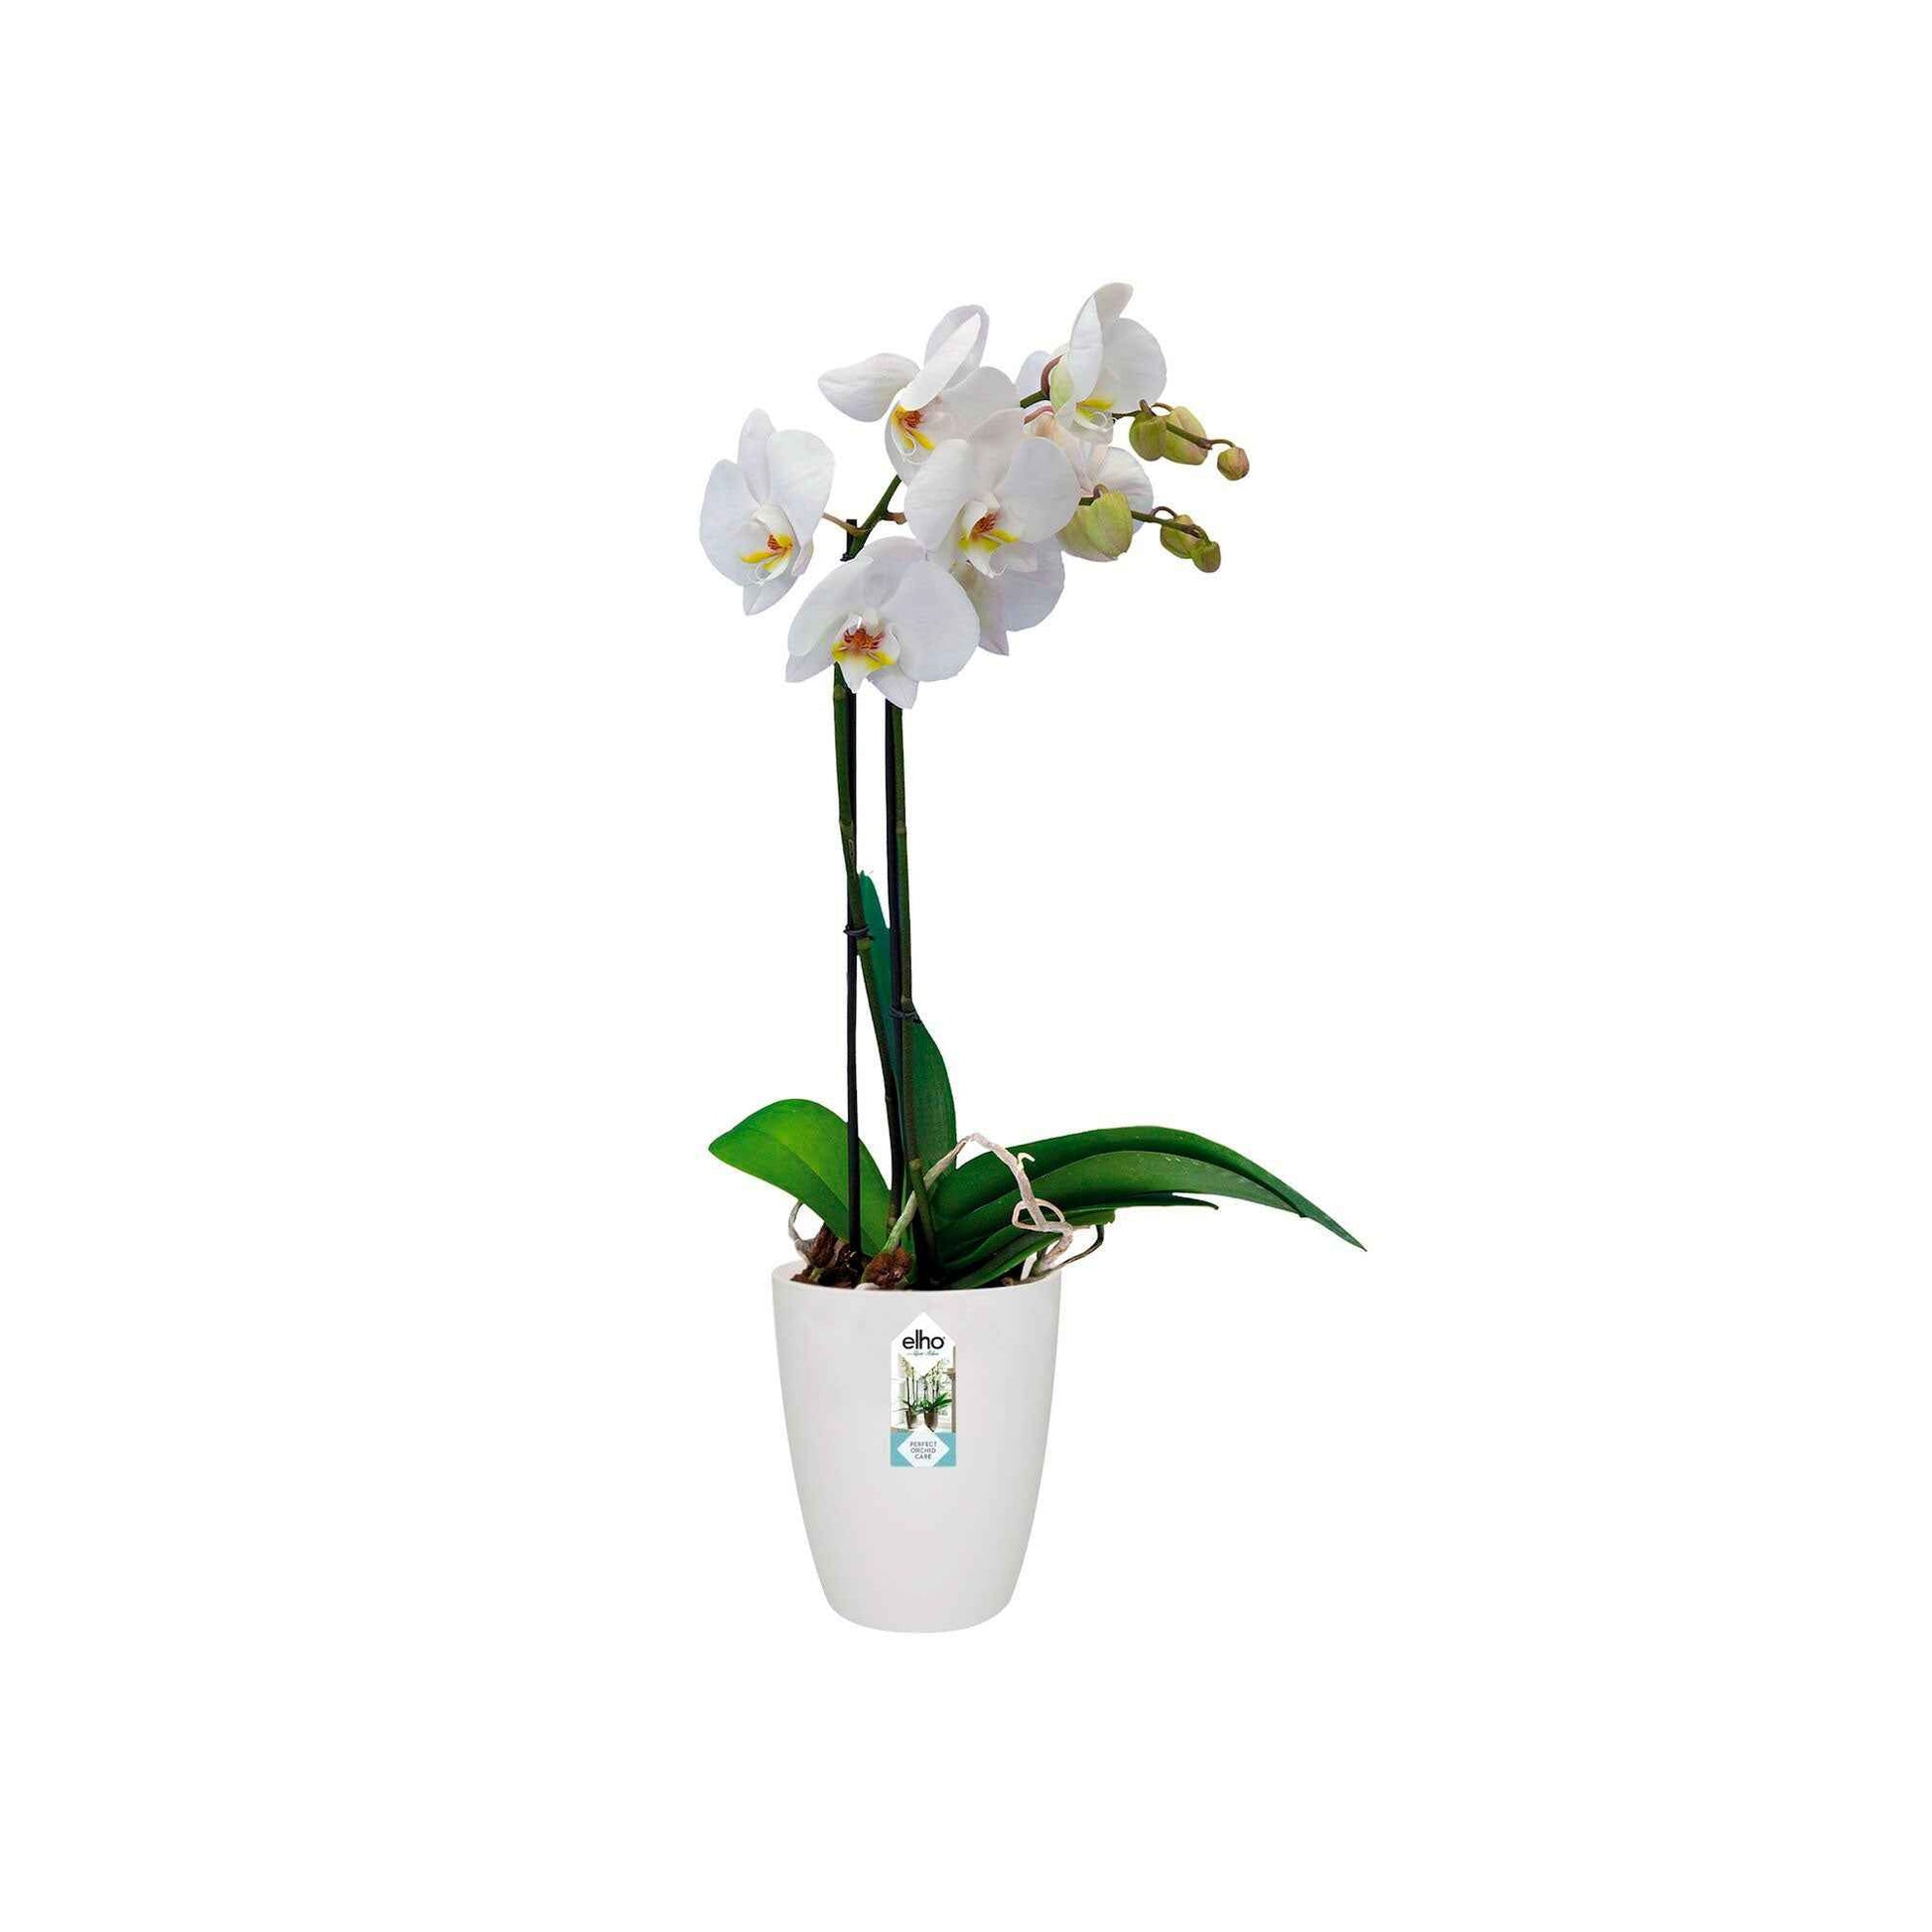 Elho pot de fleurs haut Brussels orchid rond blanc - Pot pour l'intérieur - Pots de fleurs